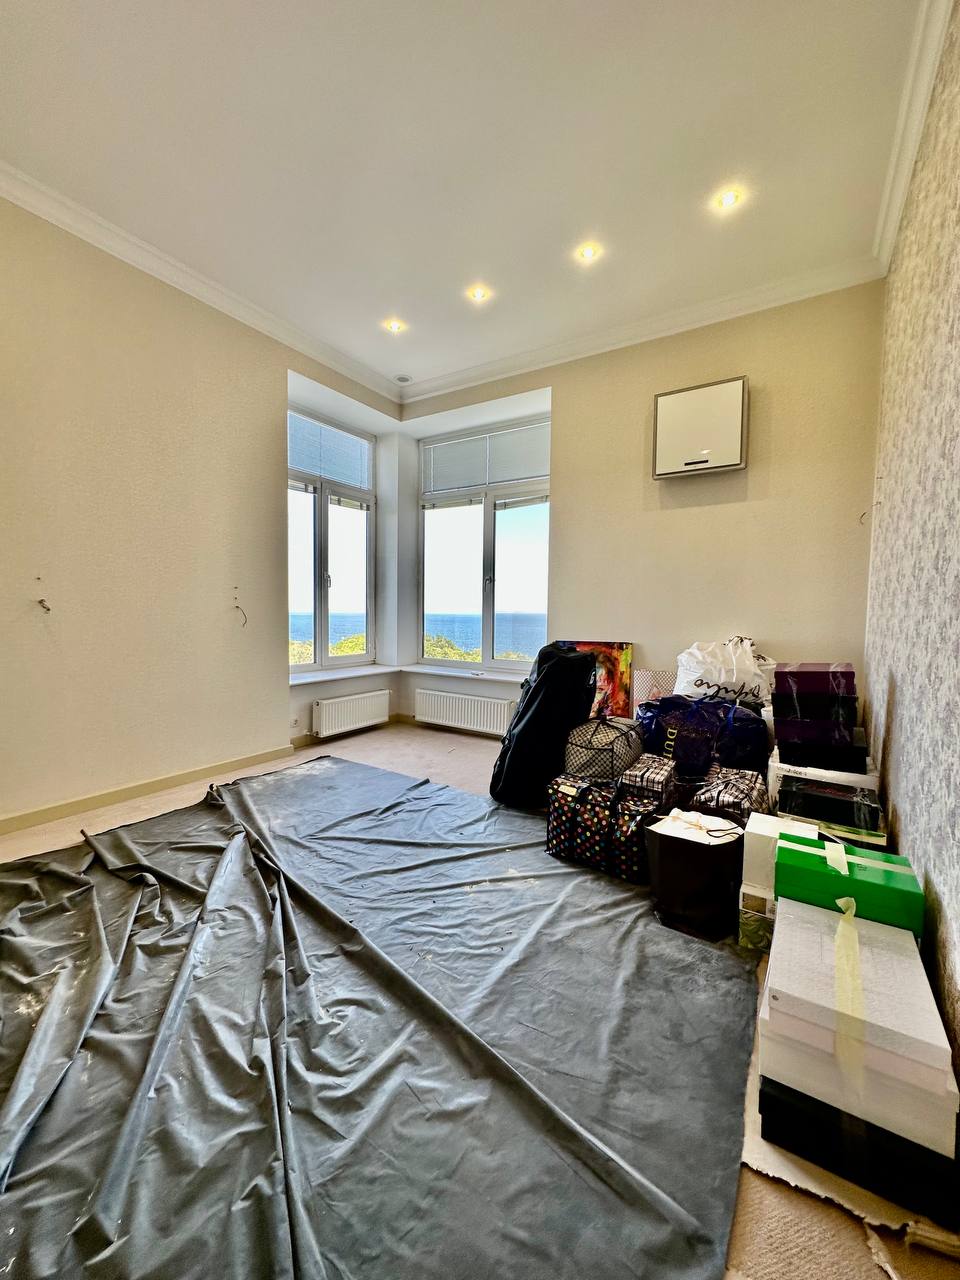 Продам квартиру в ЖК Мерседес с прямым видом моря ID 52507 (Фото 3)